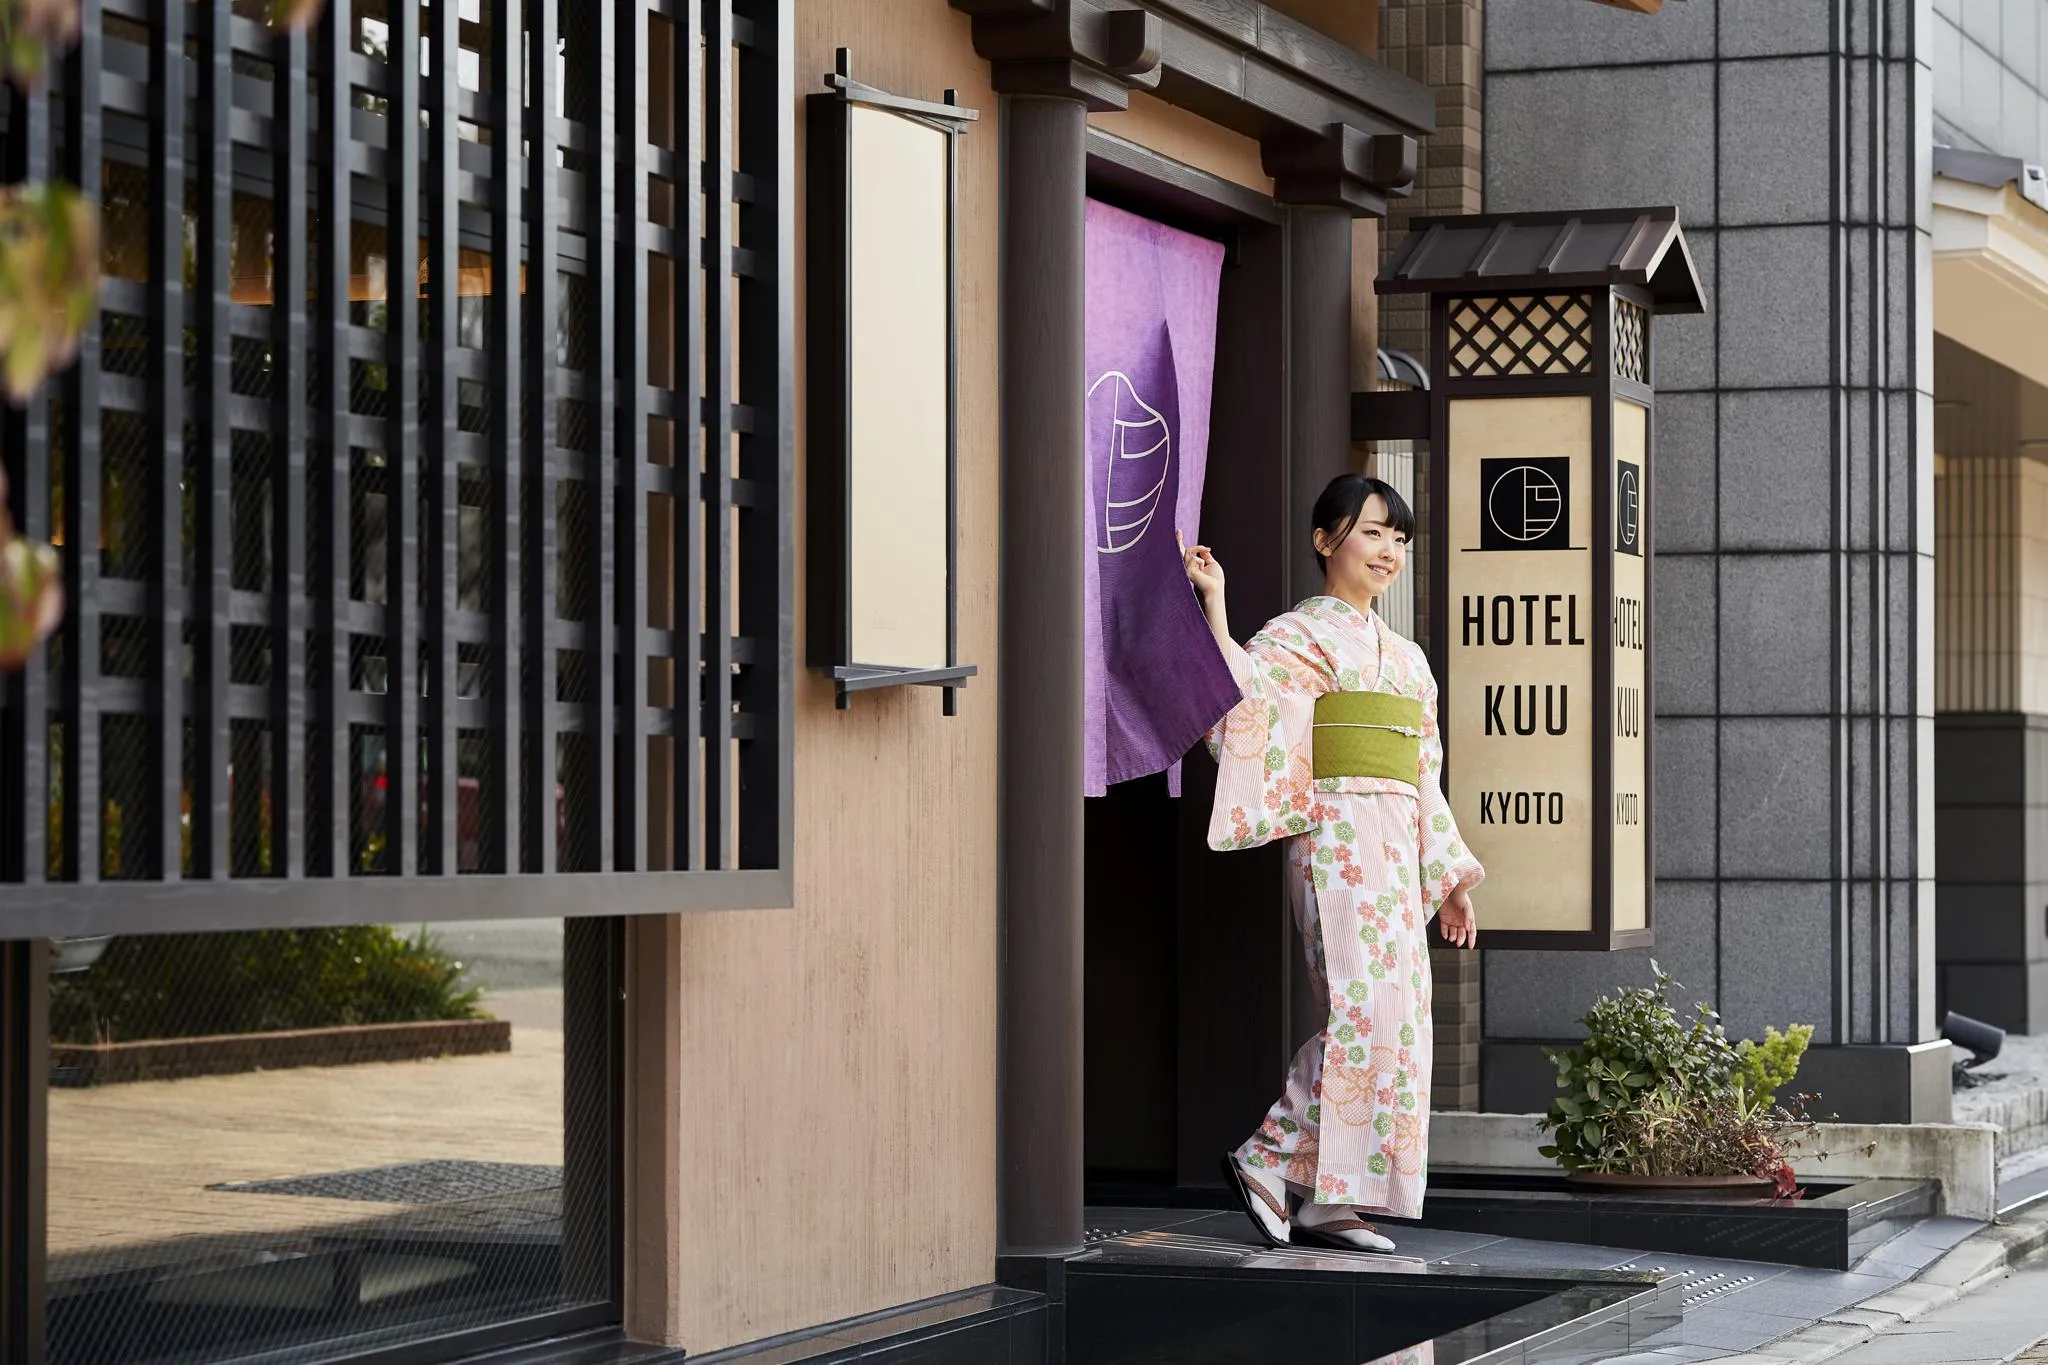 Hotel Kuu Kyoto